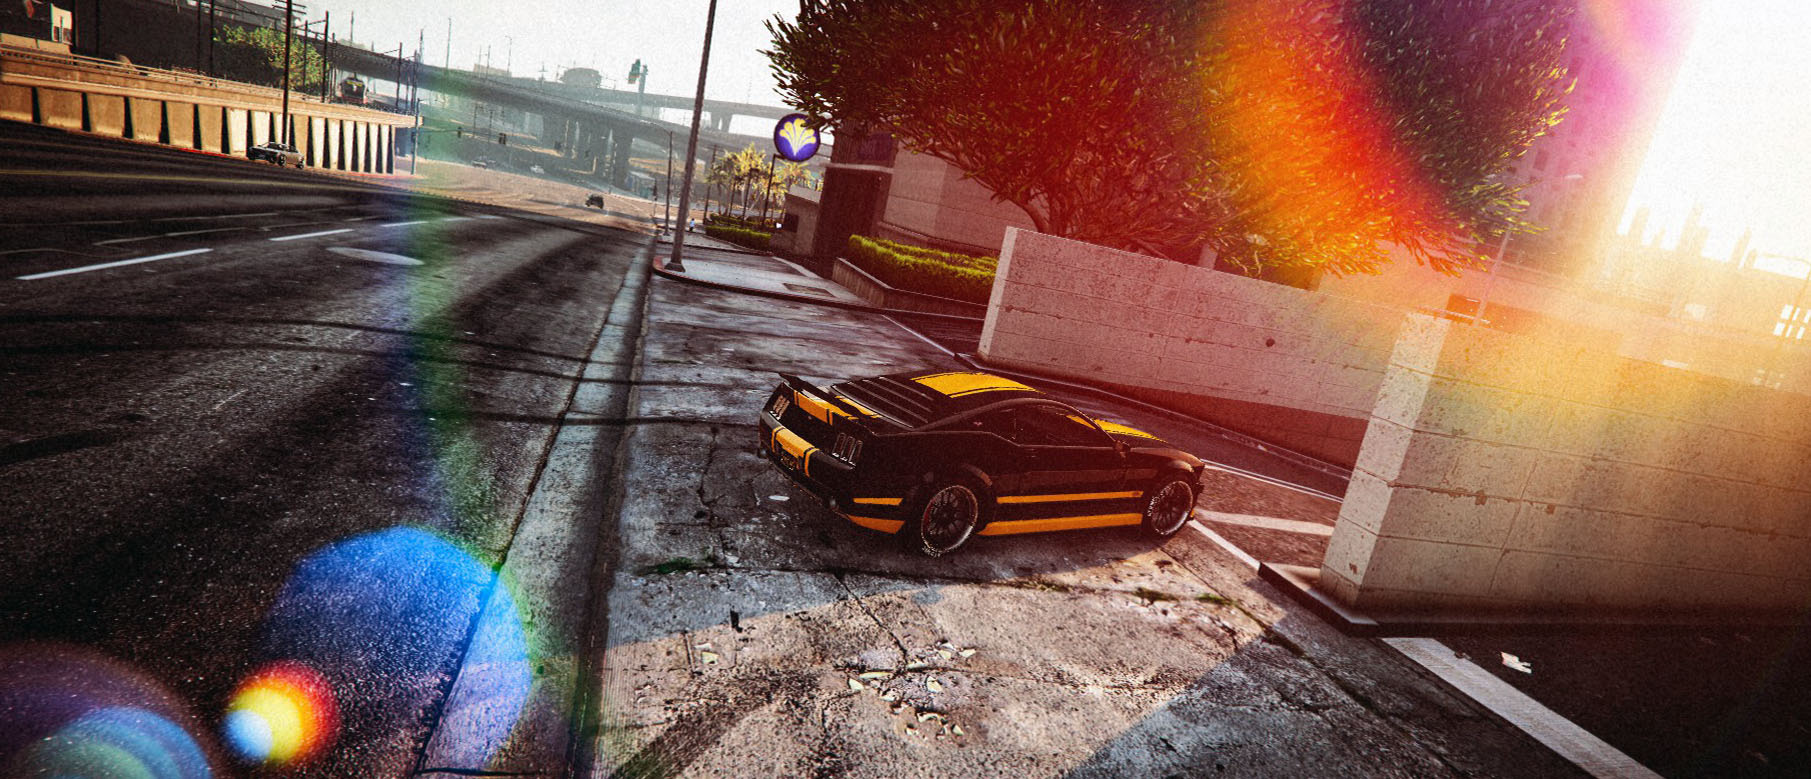 Изображение к Релизный трейлер Forza 6 воссозданный в Grand Theft Auto V